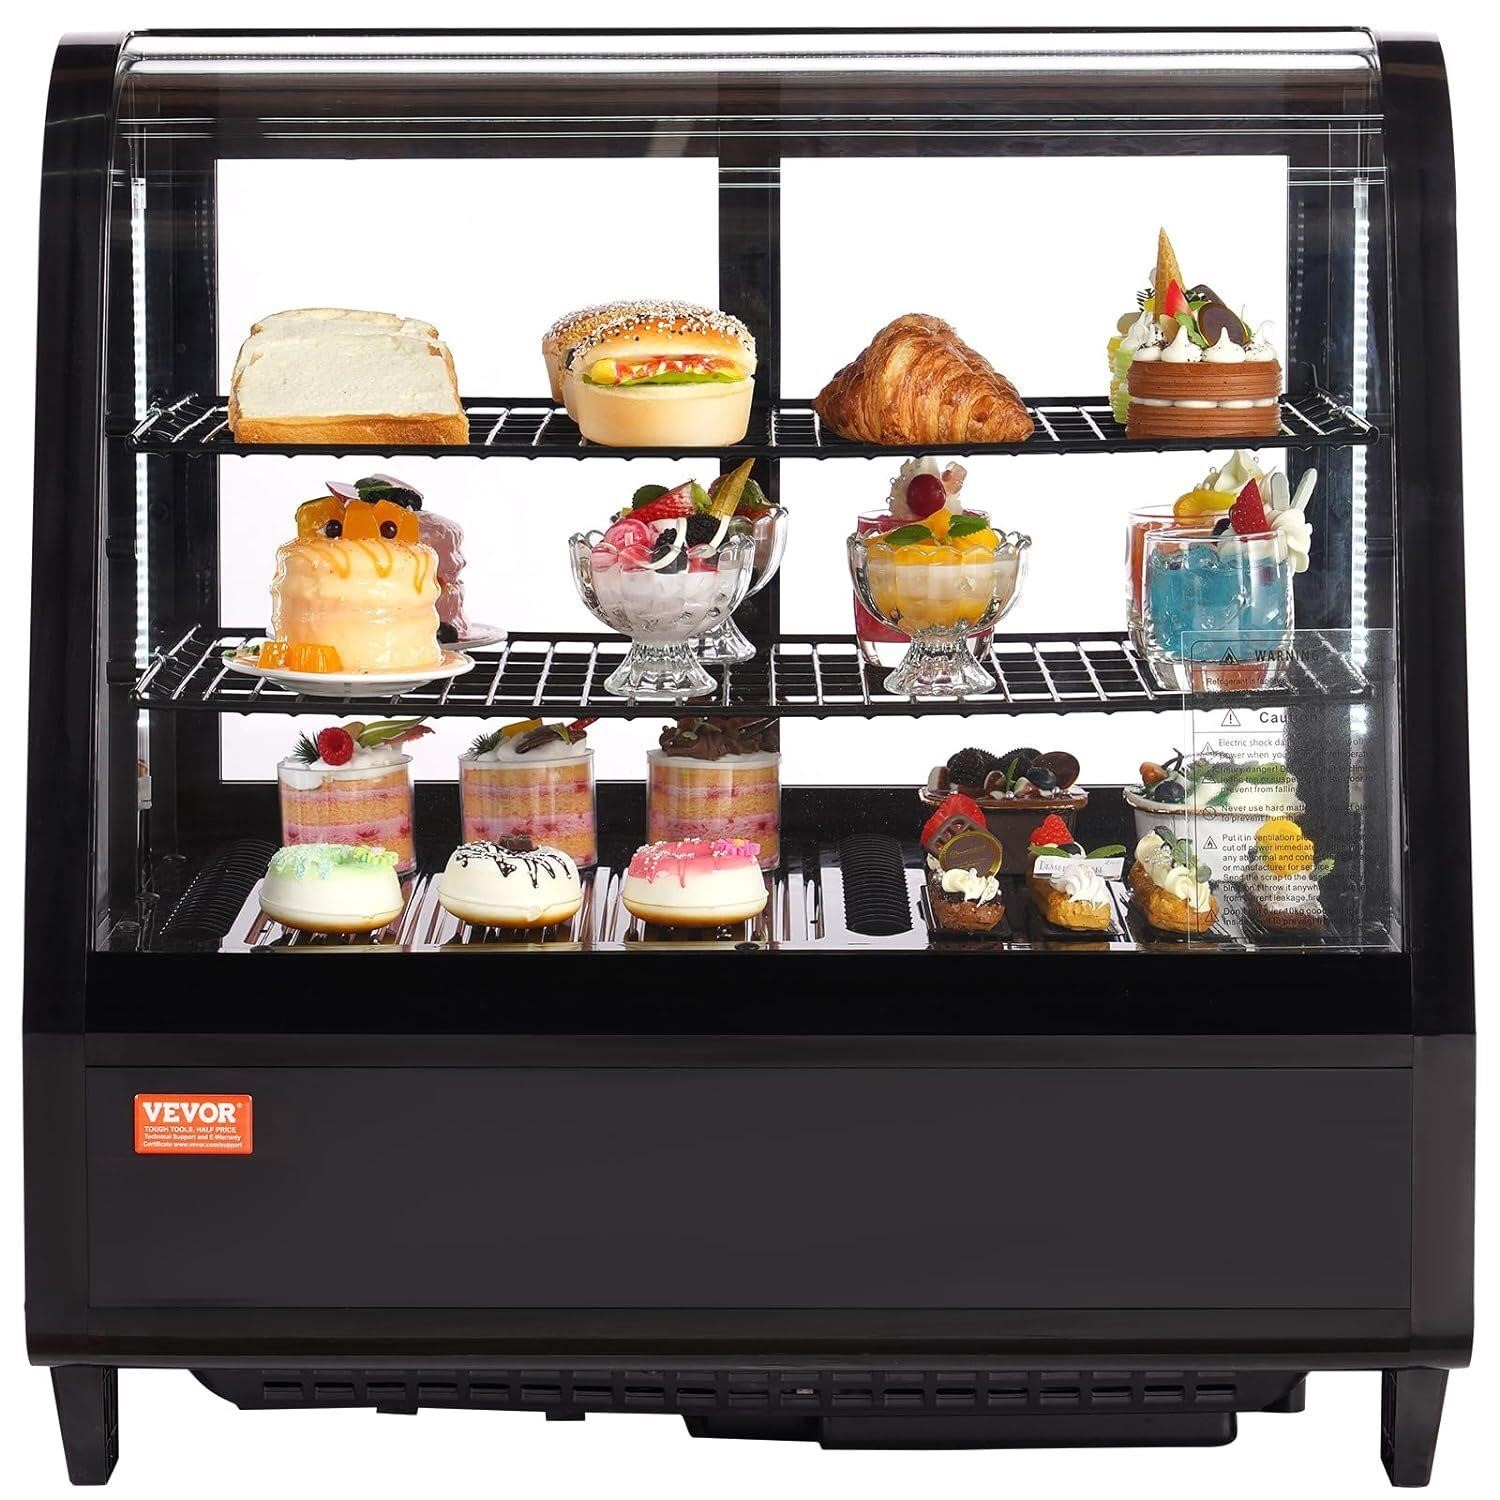 VEVOR Refrigerated Display Case  3.5 Cu.Ft./100L